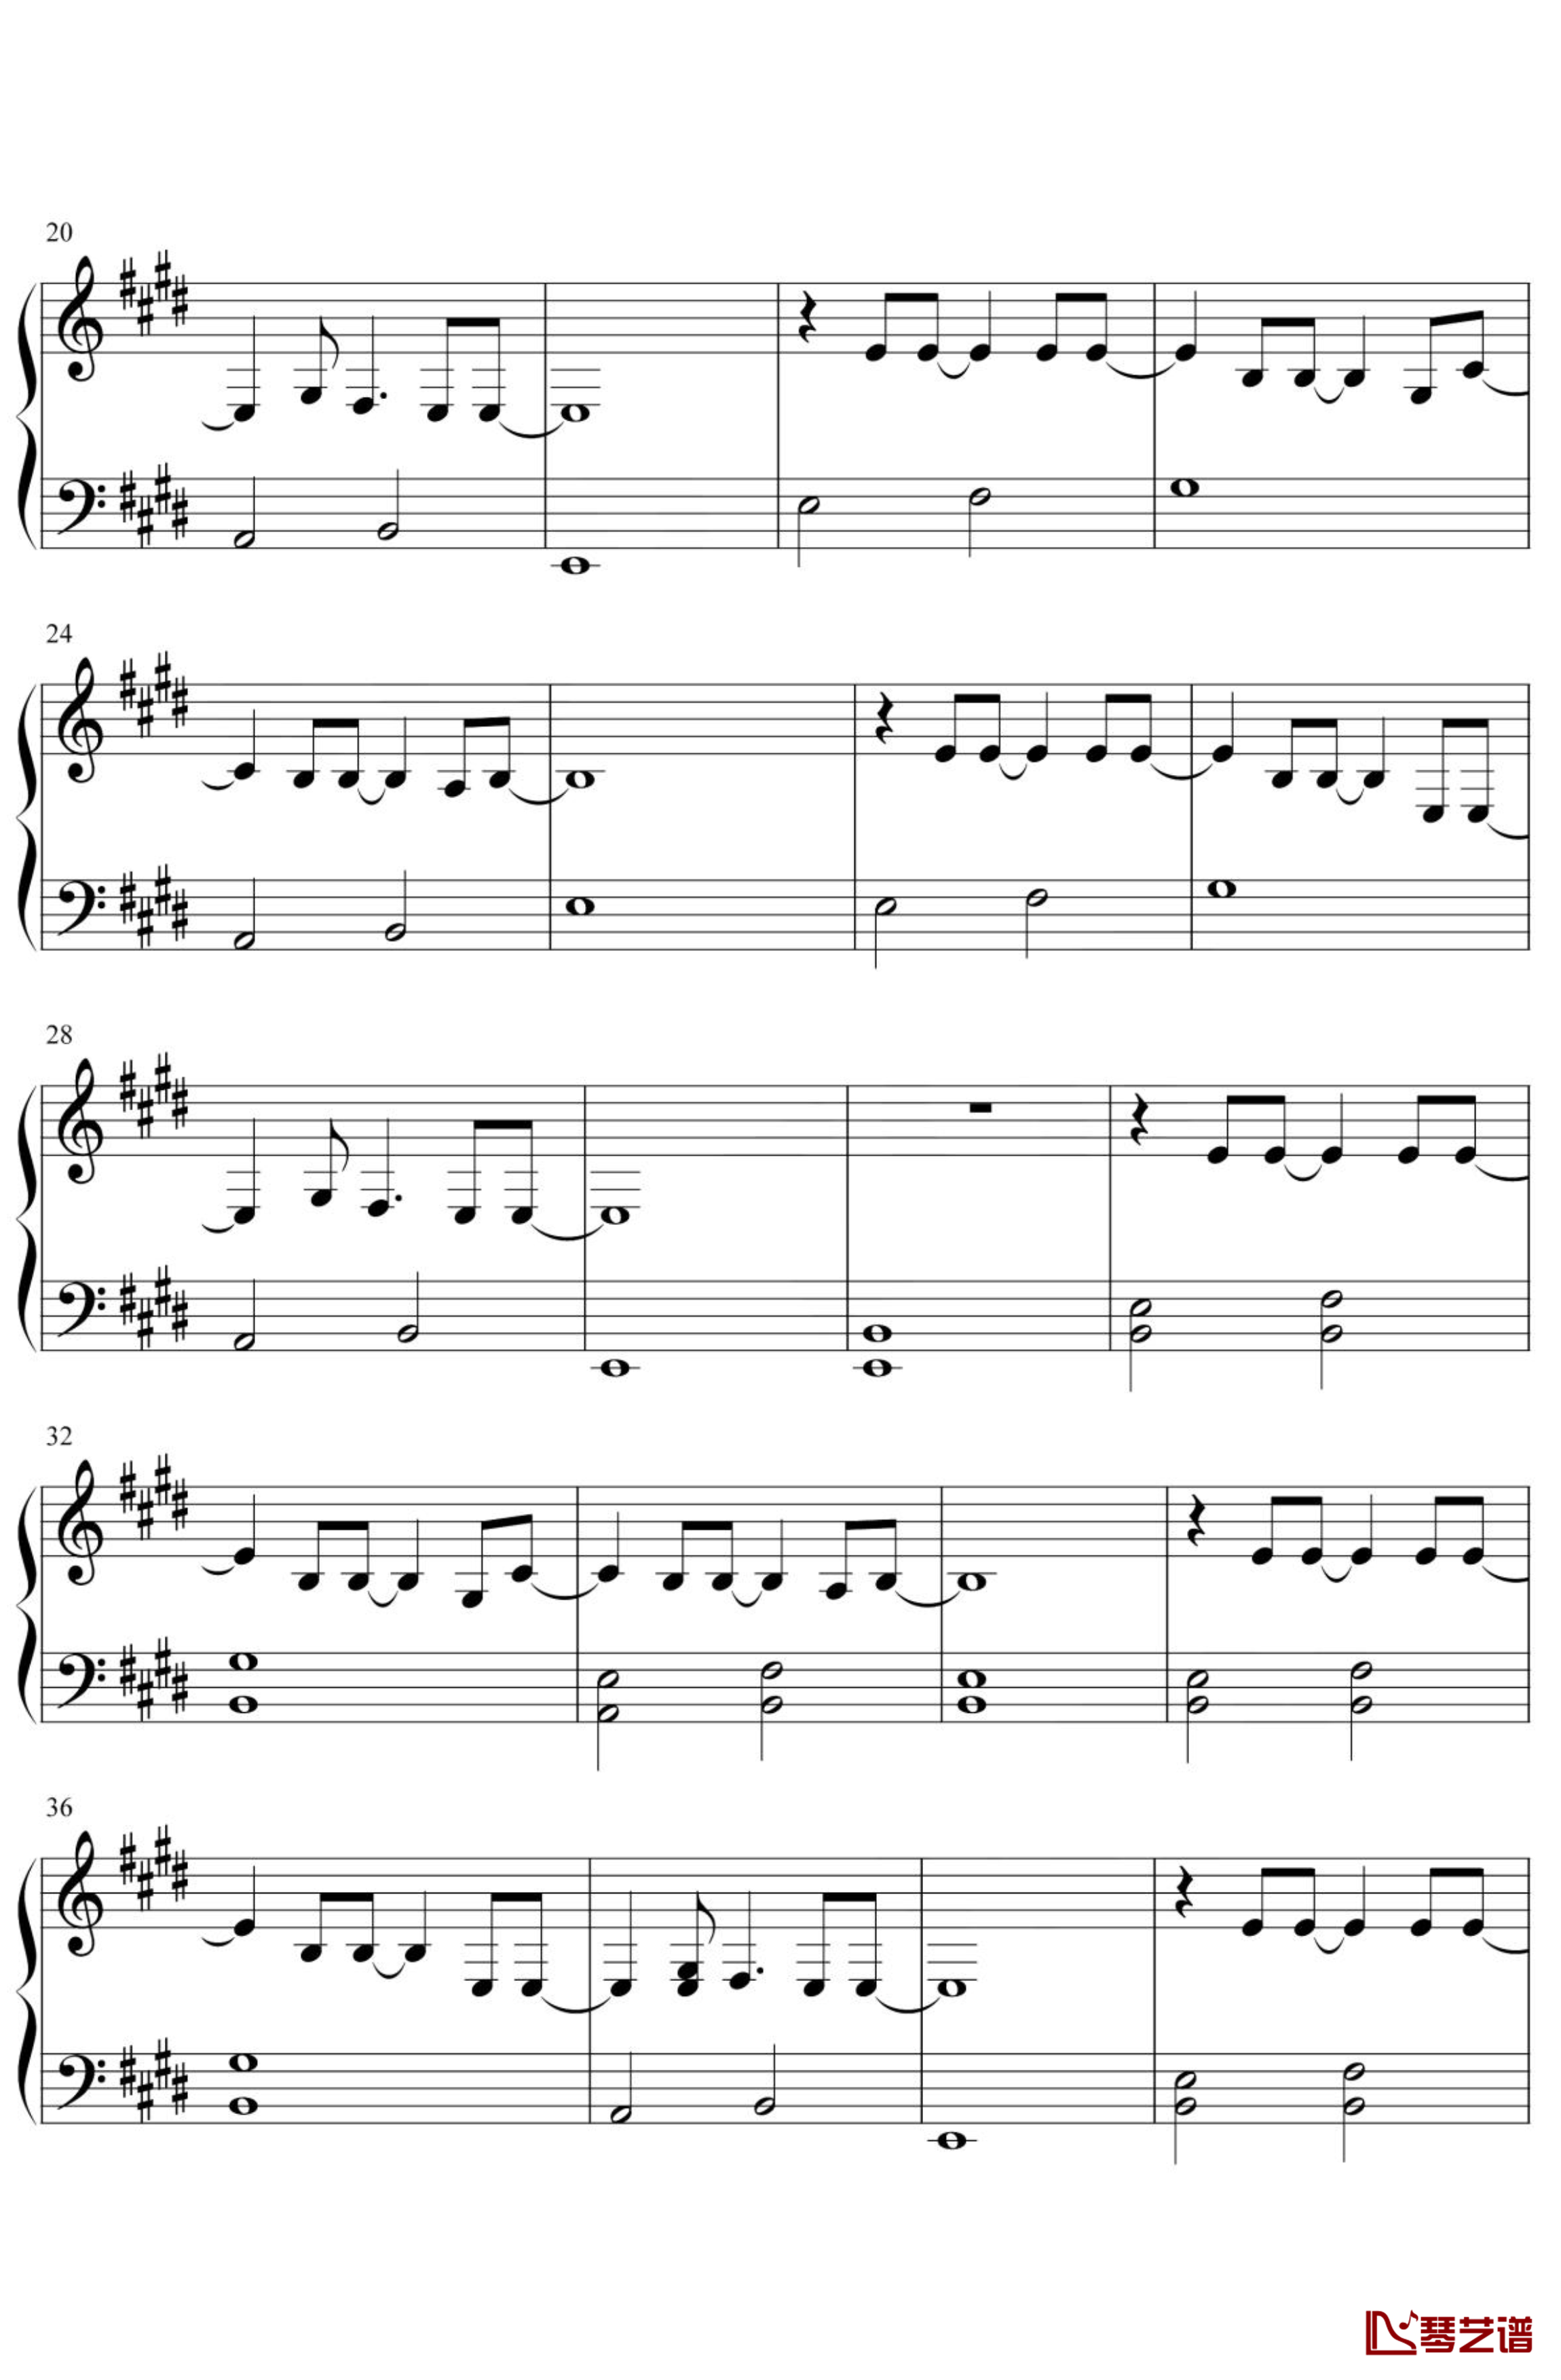 天气之子-グランドエスケープ钢琴谱 简化2